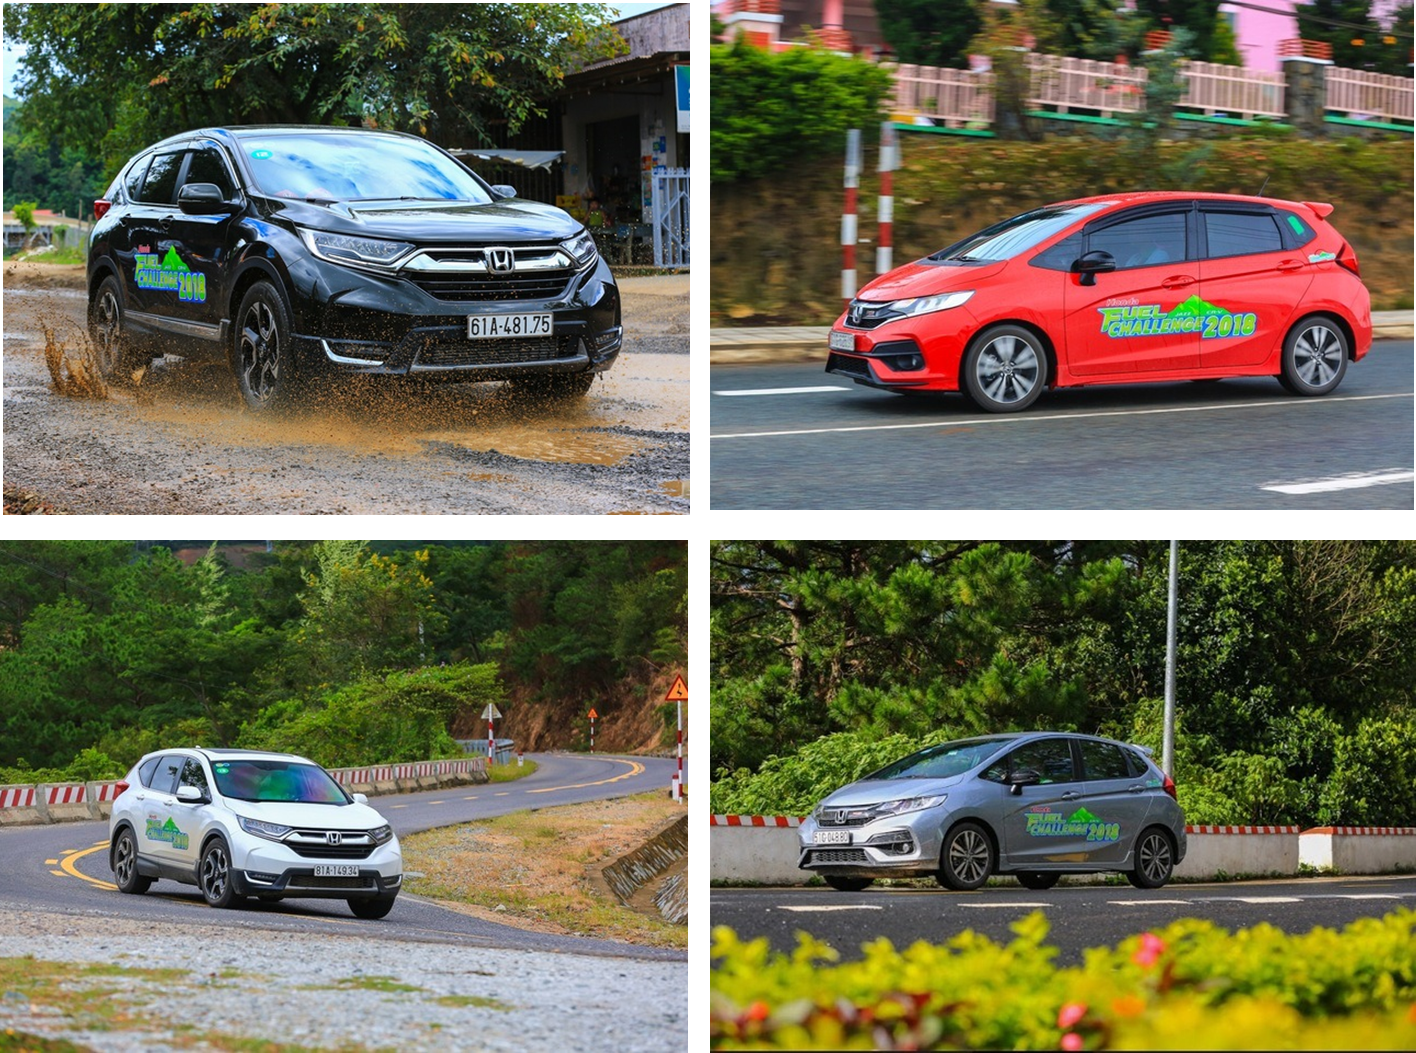 Honda Fuel Challenge 2018, Thử thách nhiên liệu cùng Honda, mức tiêu thụ nhiên liệu Honda CR-V, mức tiêu thụ nhiên liệu Honda Jazz